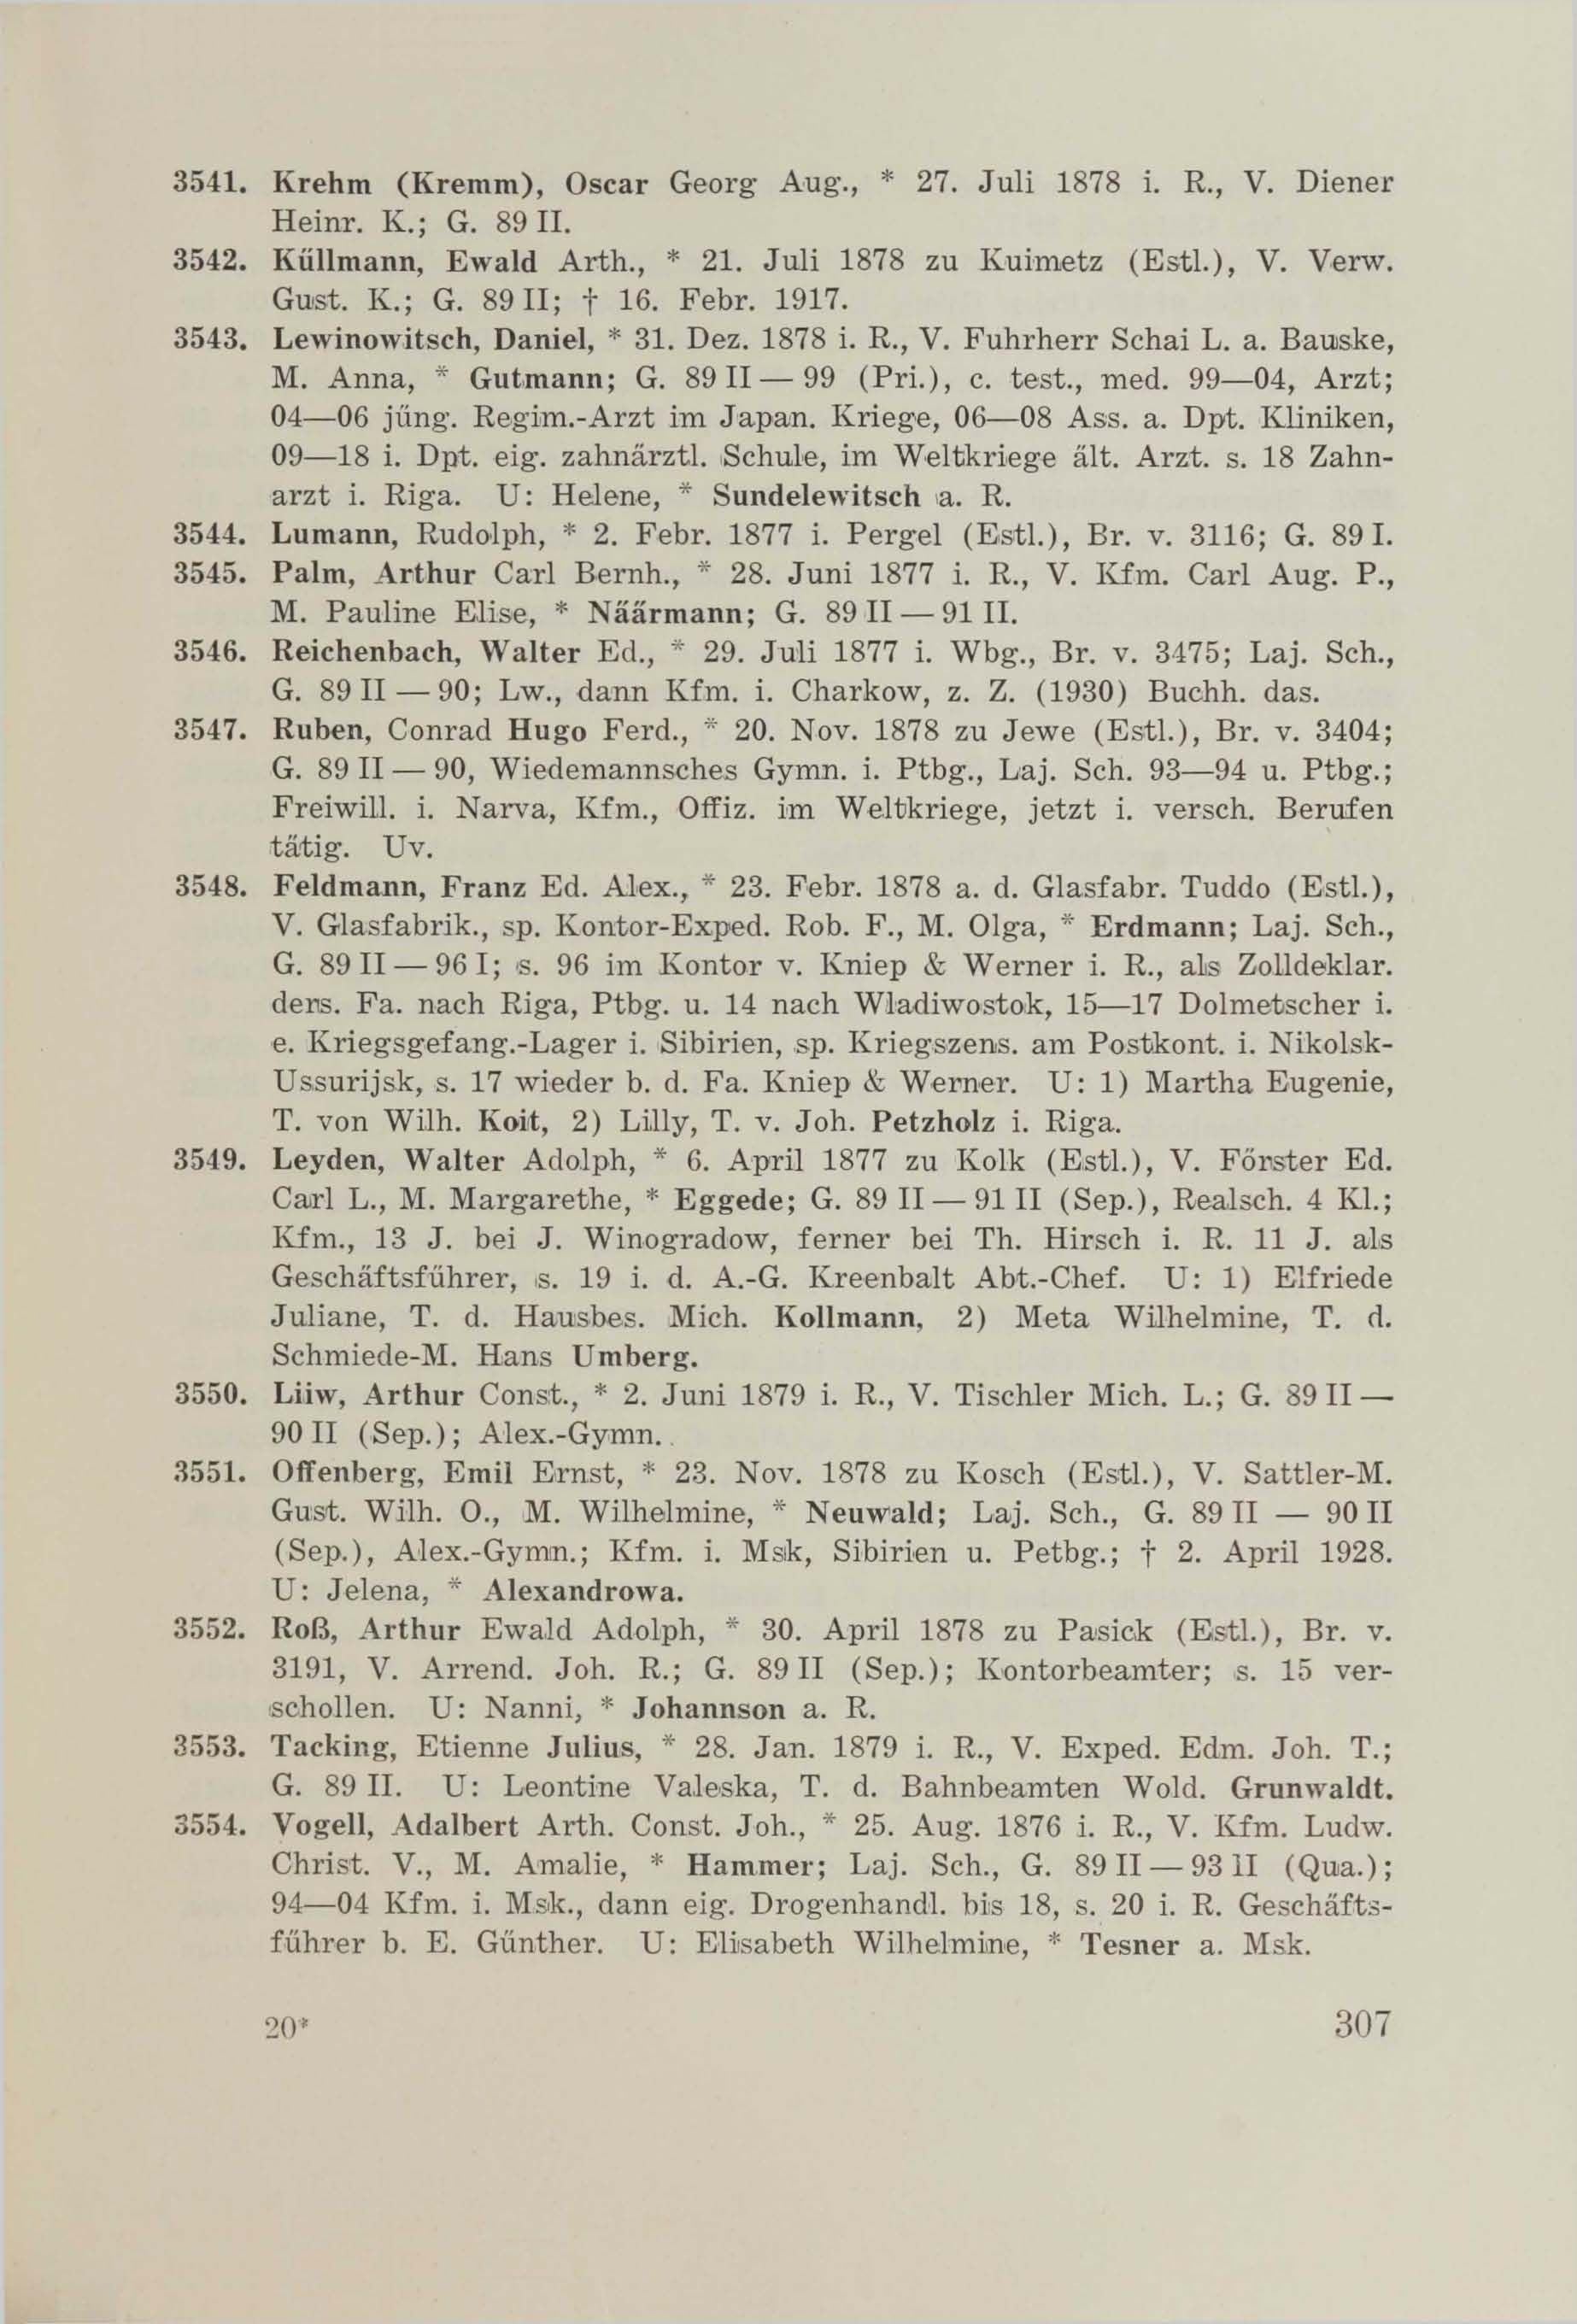 Schüler-Verzeichnis des Revalschen Gouvernements-Gymnasiums 1805–1890 (1931) | 317. (307) Main body of text